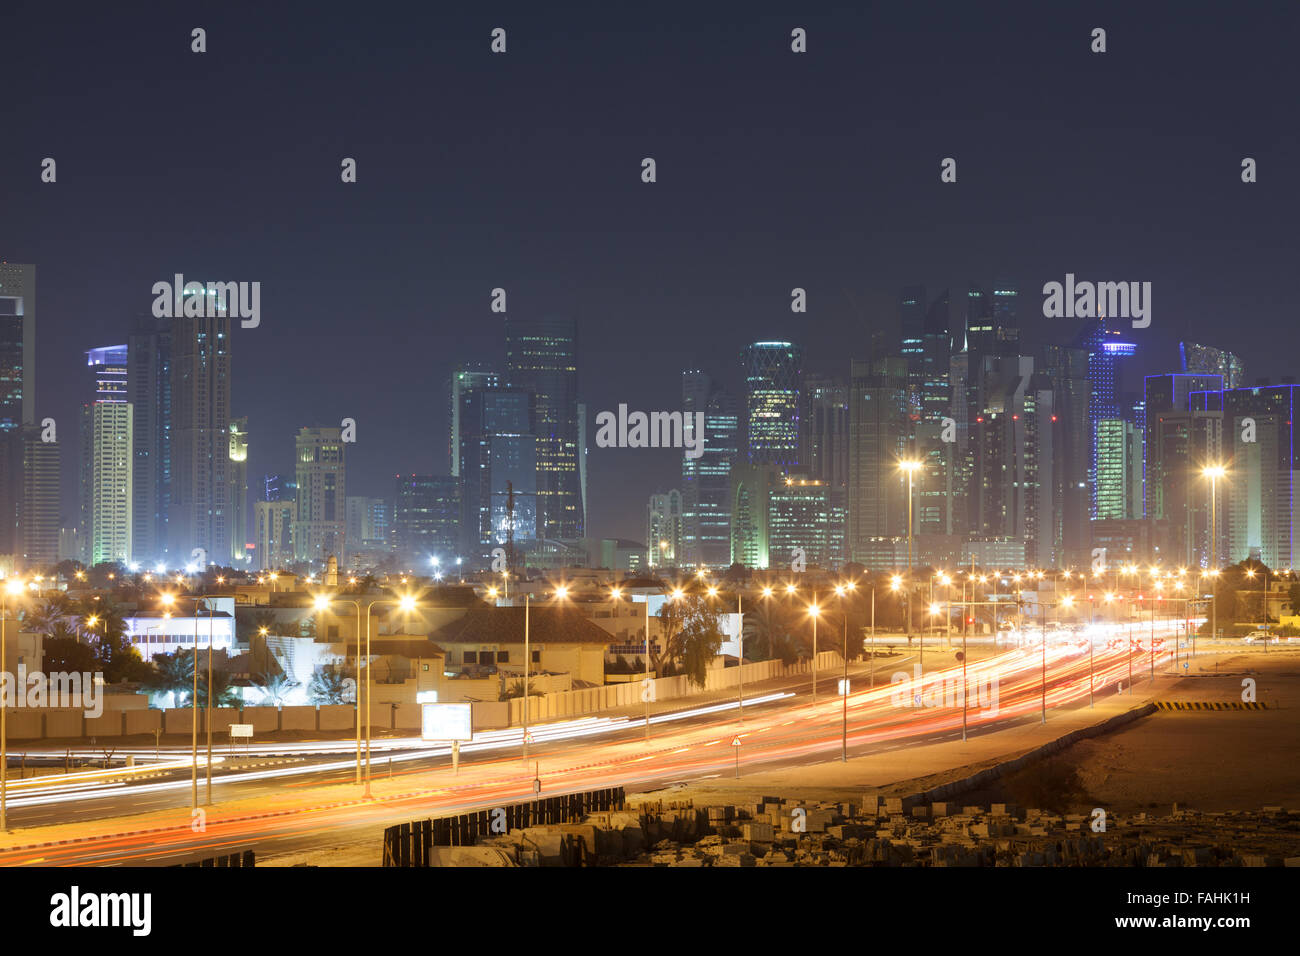 Doha city skyline at night Stock Photo